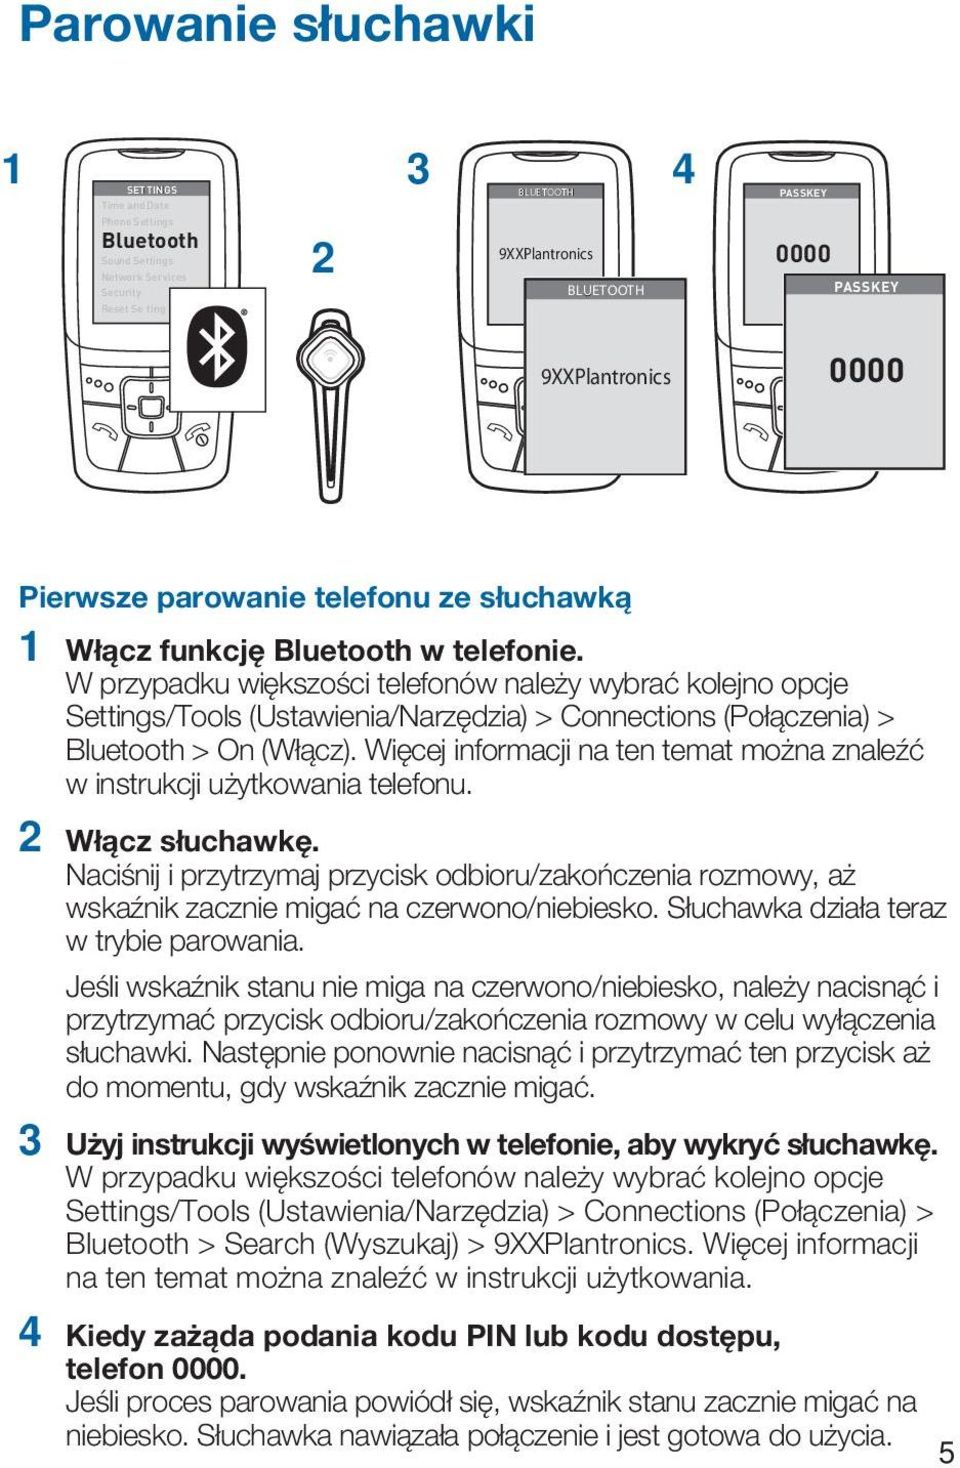 W przypadku większości telefonów należy wybrać kolejno opcje Settings/Tools (Ustawienia/Narzędzia) > Connections (Połączenia) > Bluetooth > On (Włącz).